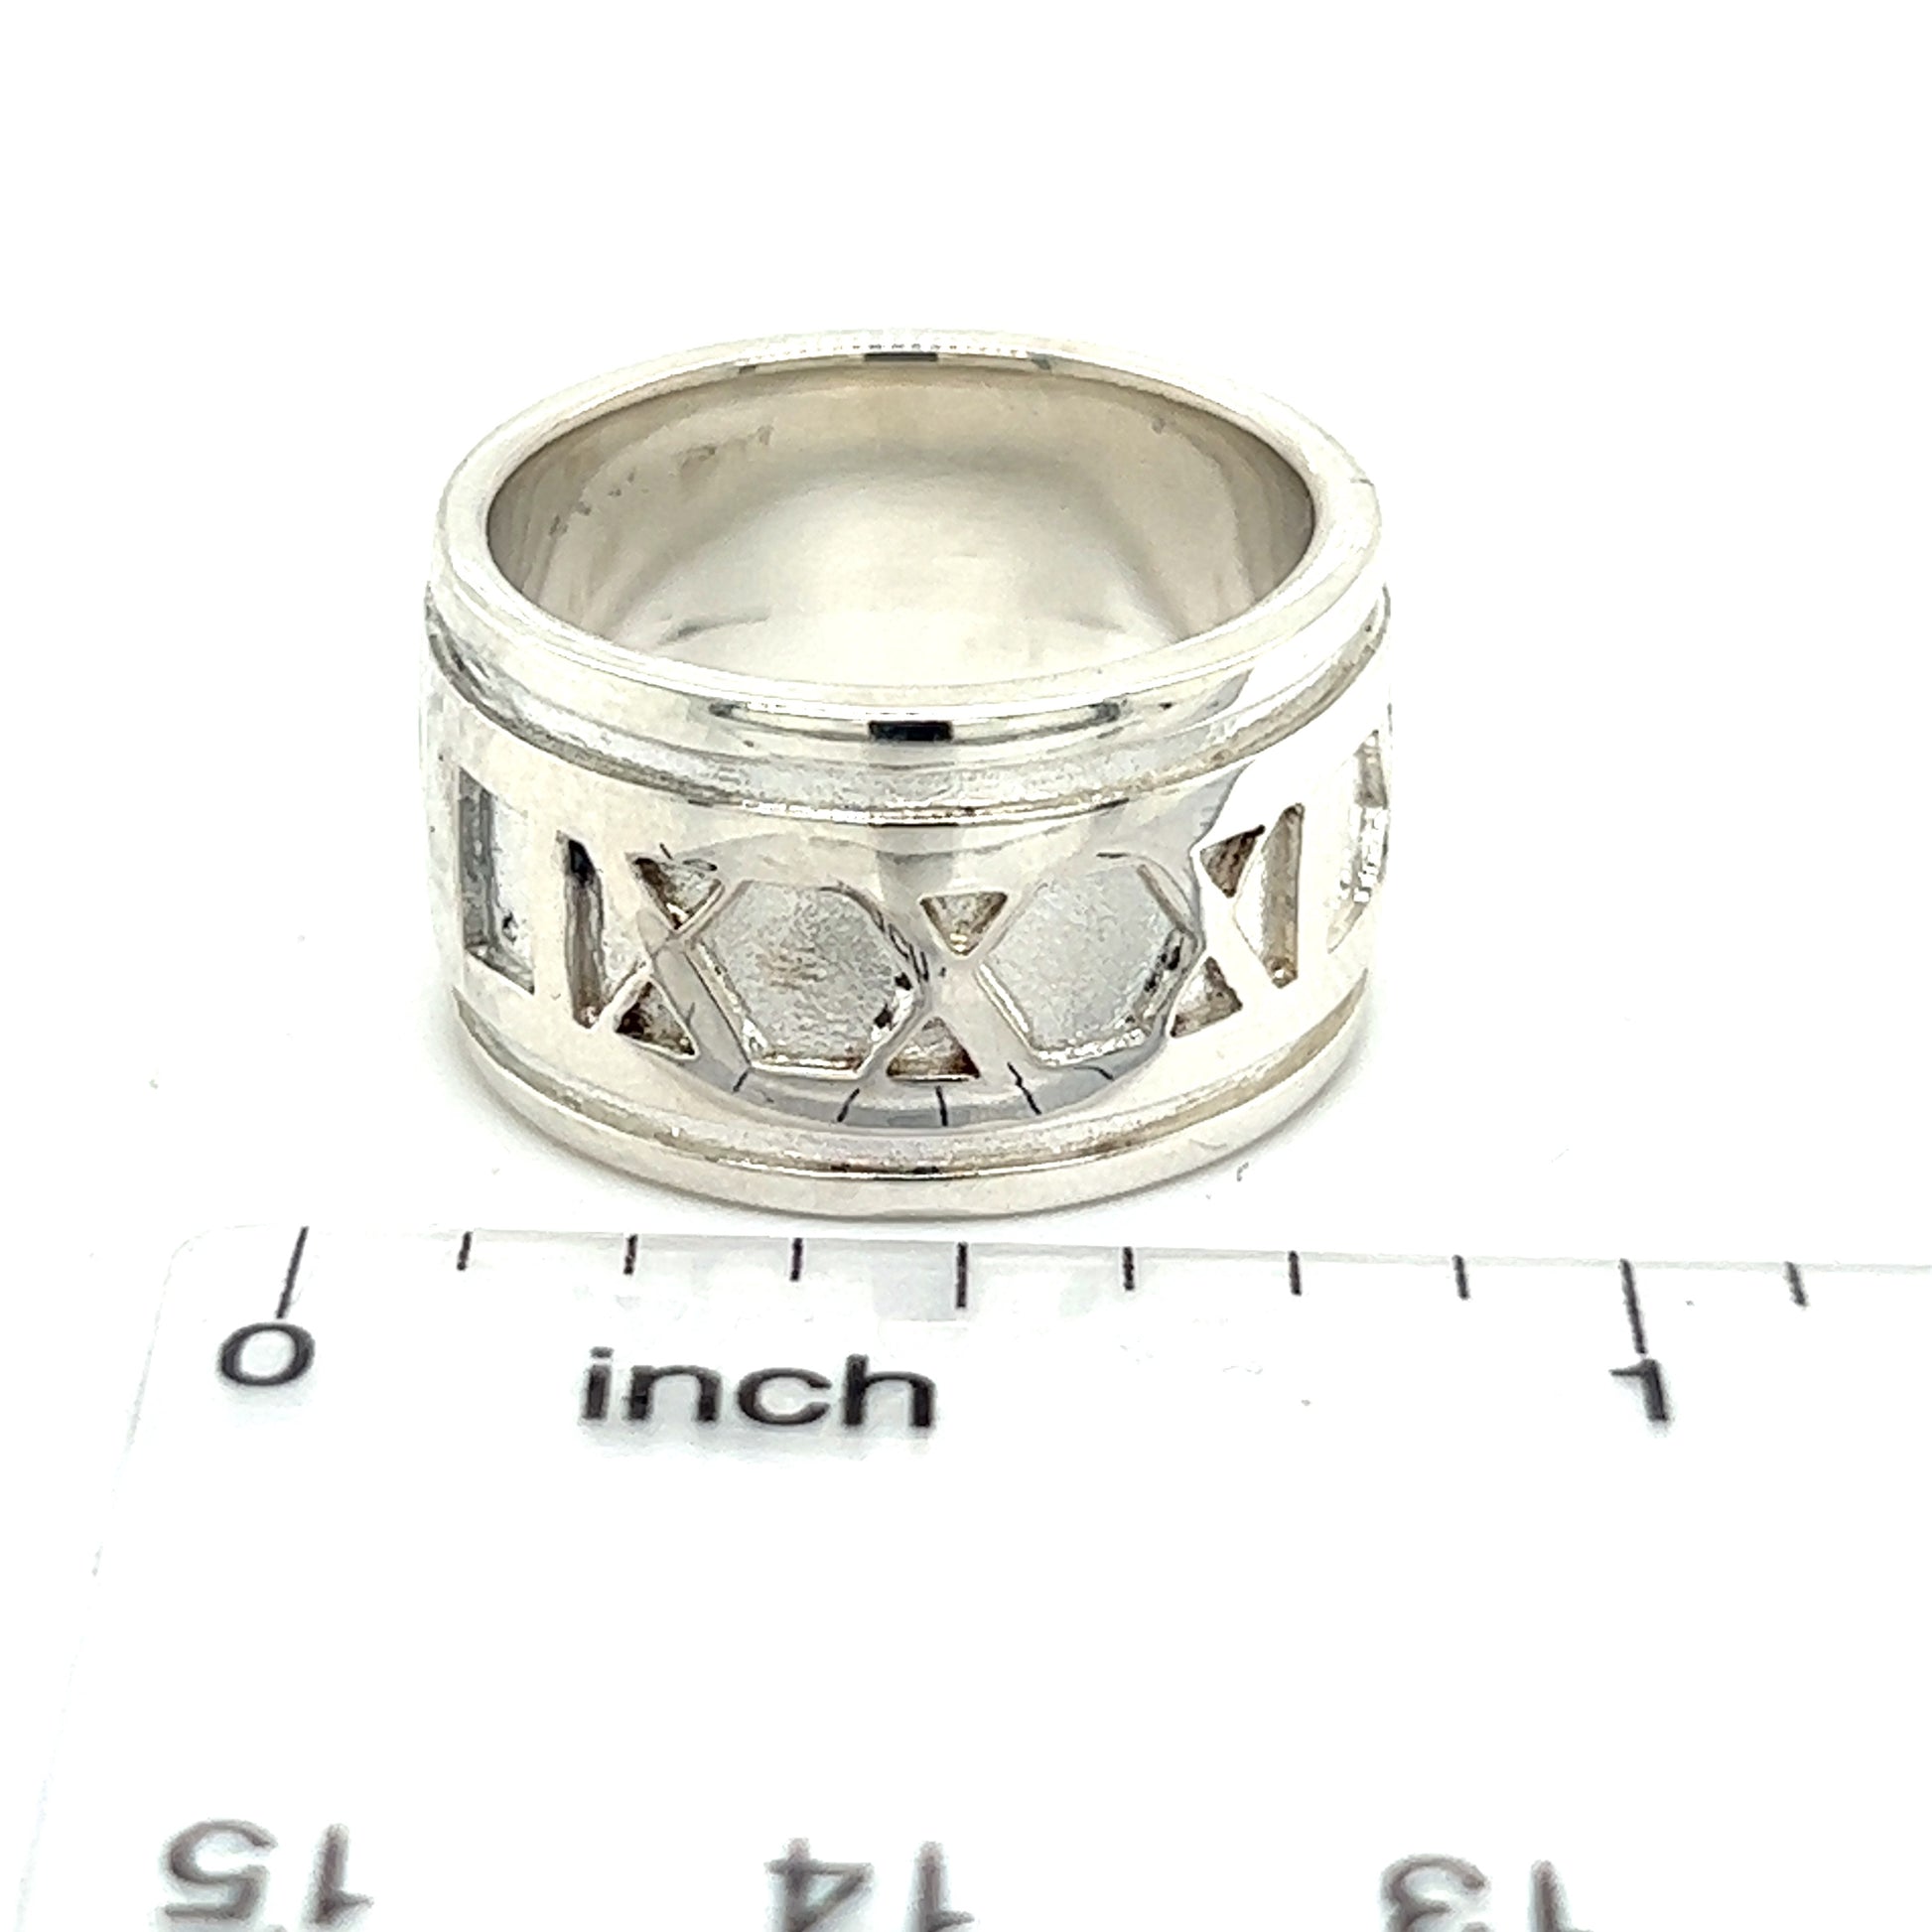 Tiffany & Co Estate Atlas Ring Size 5.25 Silver 11 mm TIF500 - Certified Fine Jewelry